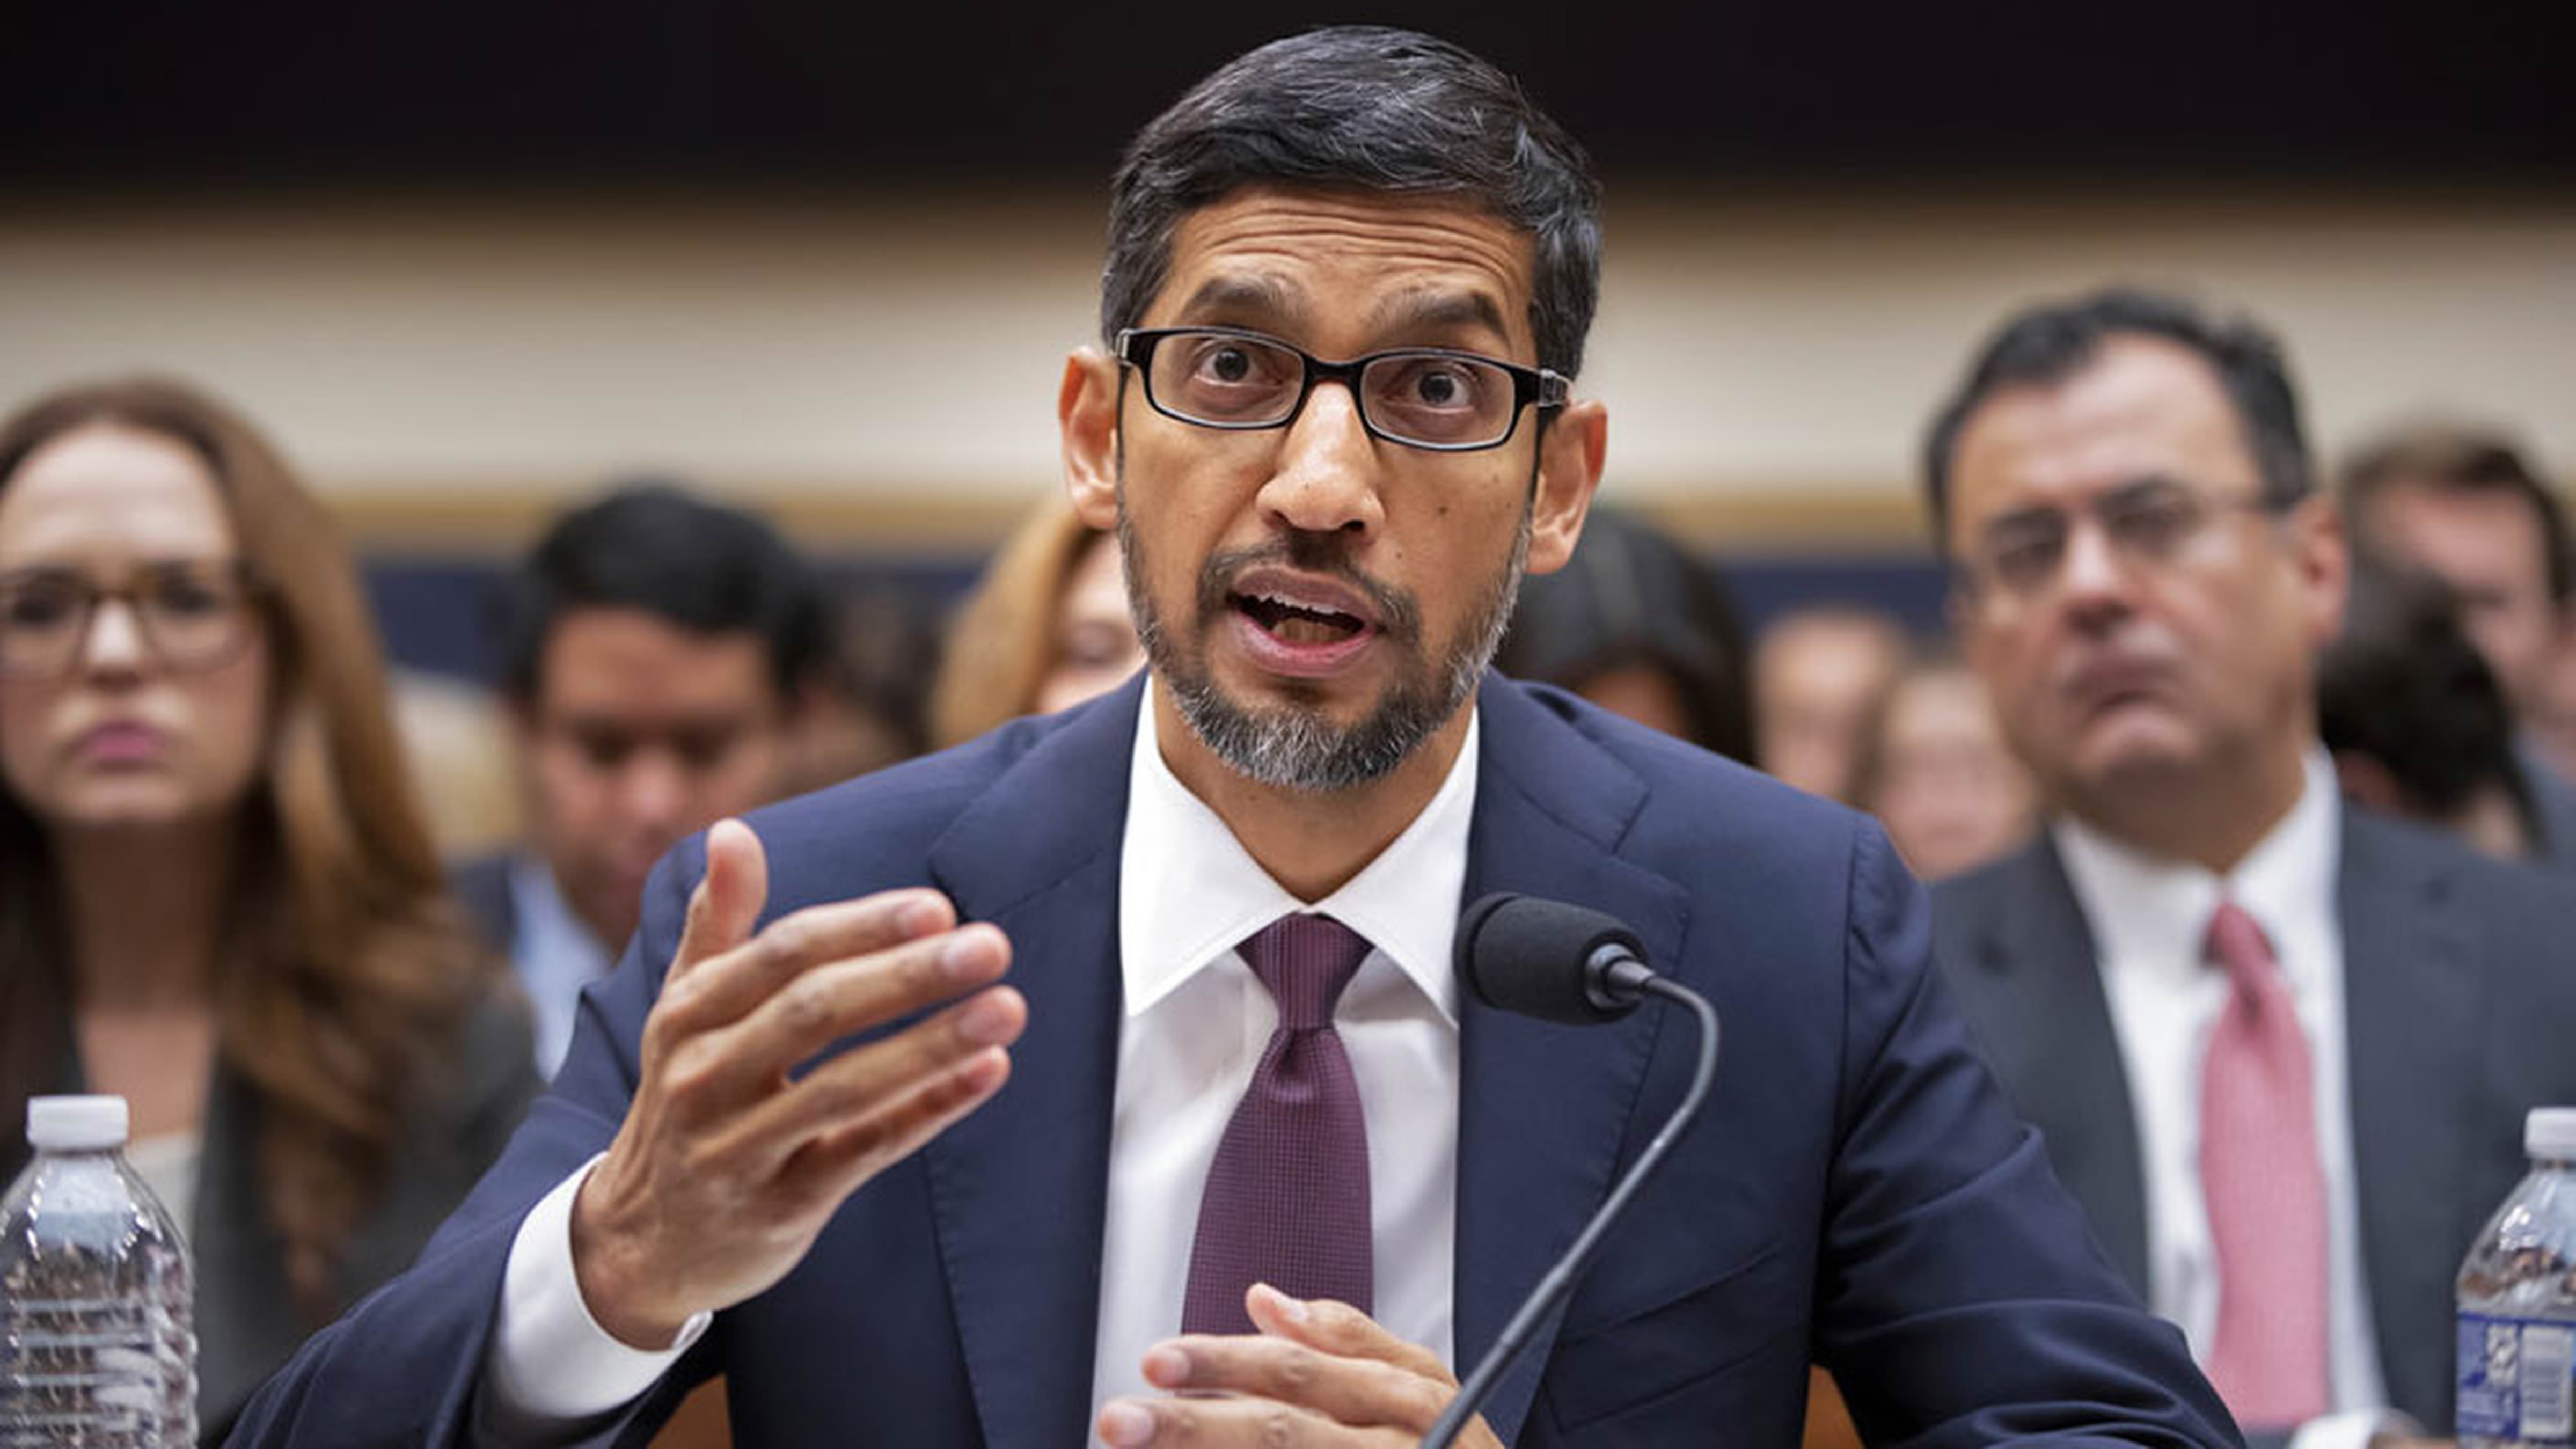 O CEO της Google καταθέτει στην επιτροπή νομικών υποθέσεων της Βουλής των Αντιπροσώπων